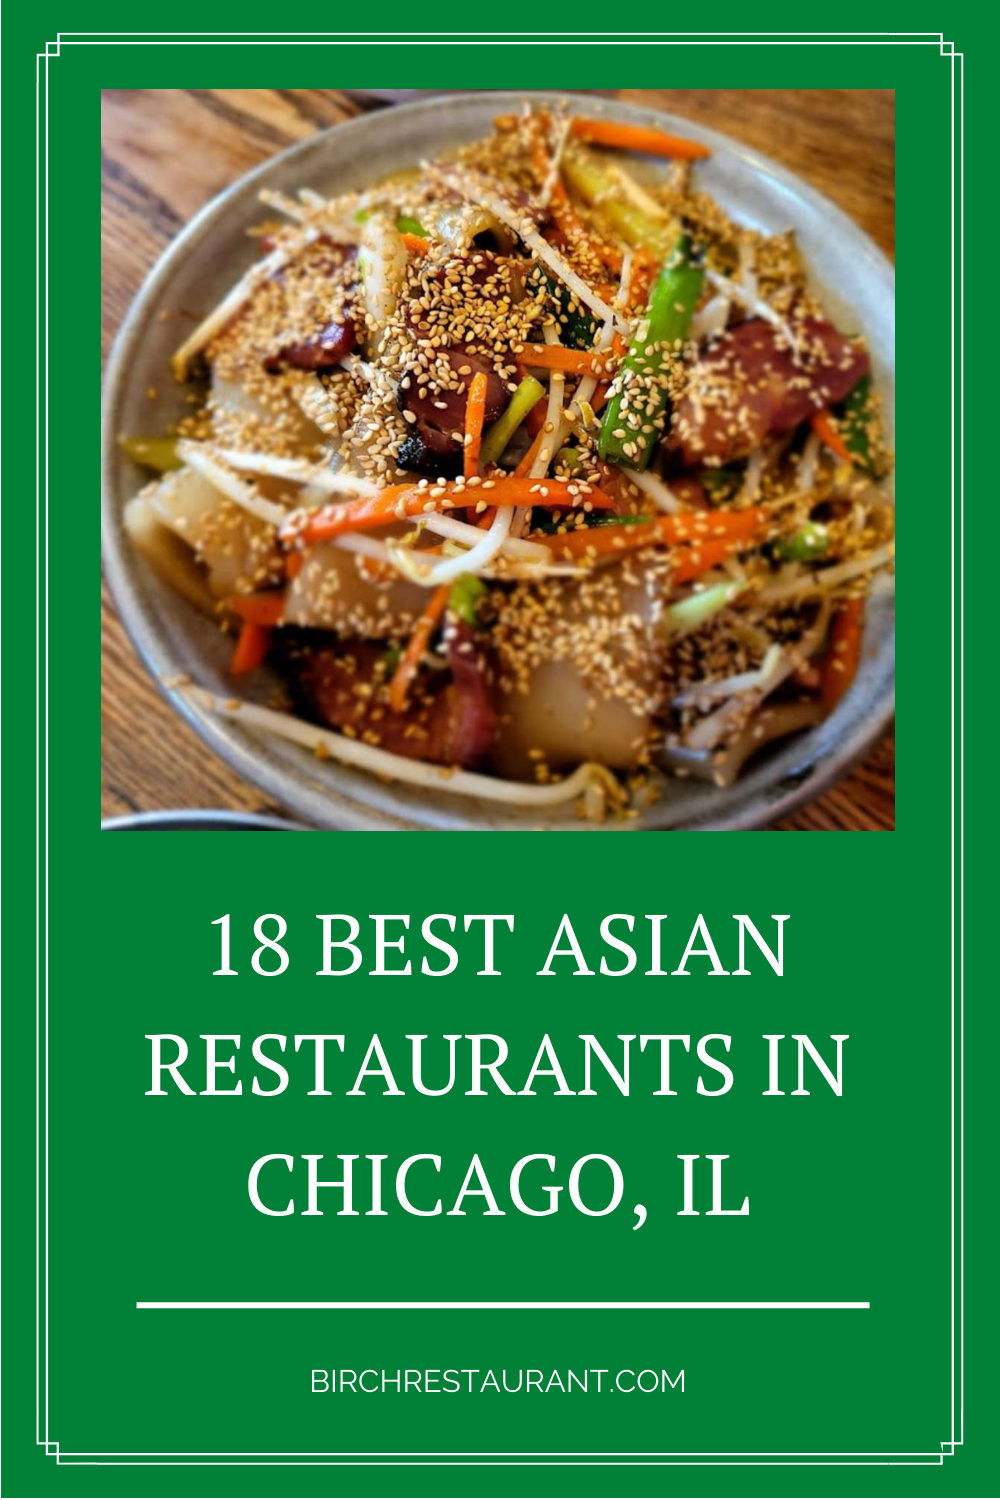 Asian Restaurants in Chicago, IL